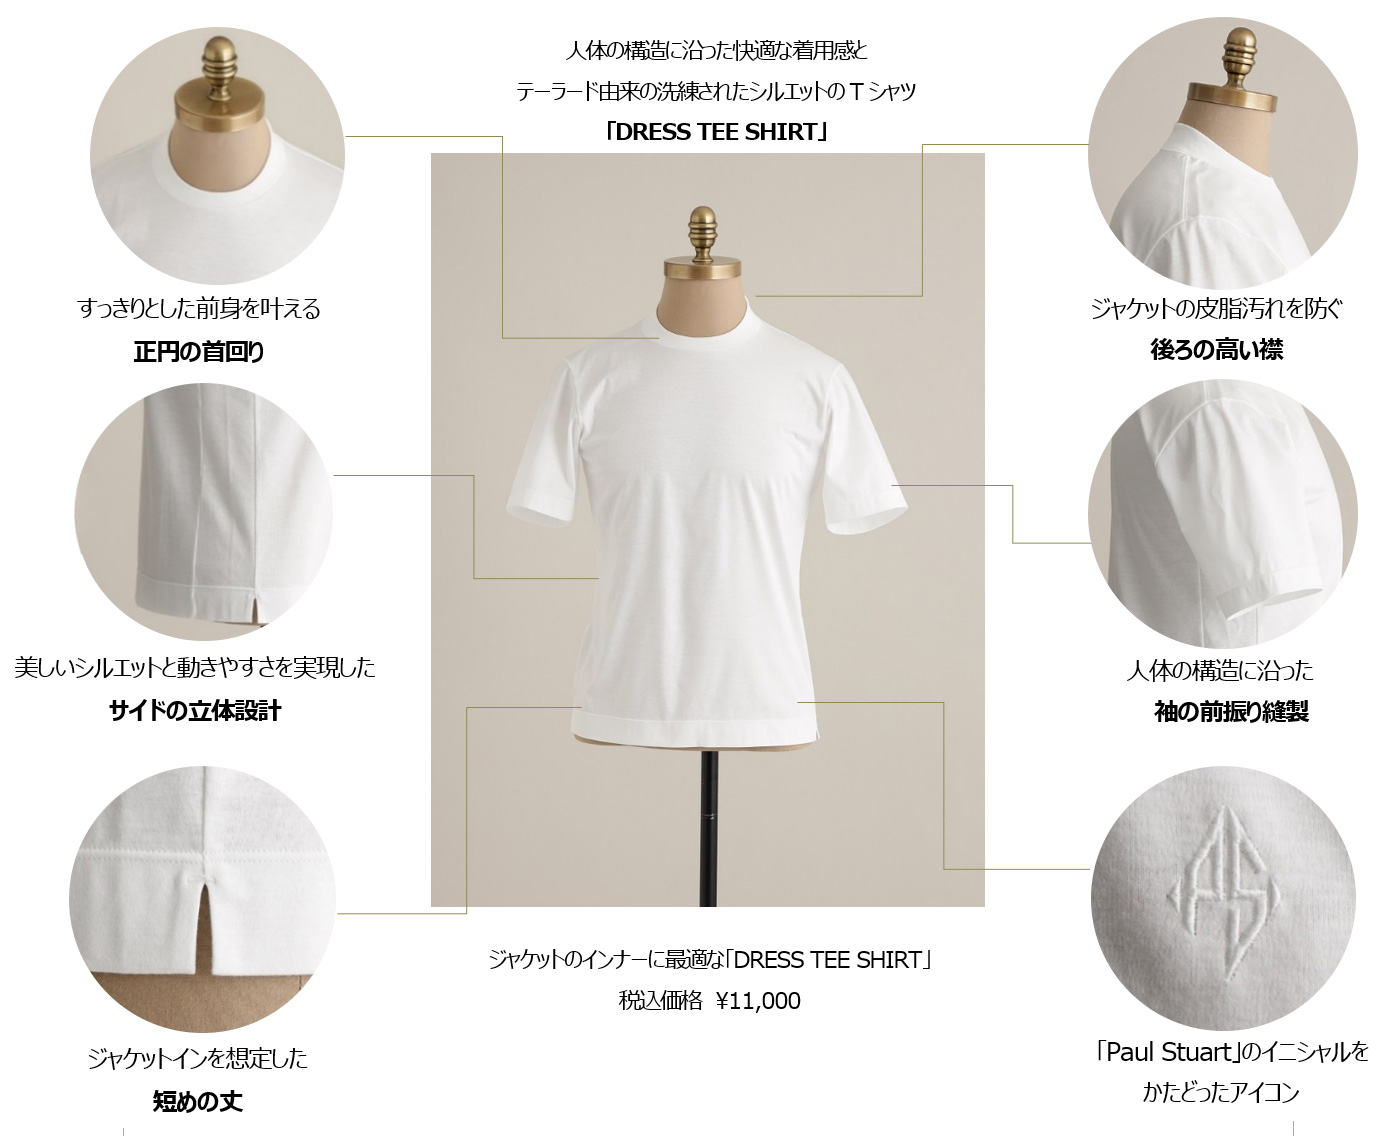 人体の構造に沿った快適な着用感とテーラード由来の洗練されたシルエットのTシャツ「DRESS TEE SHIRT」